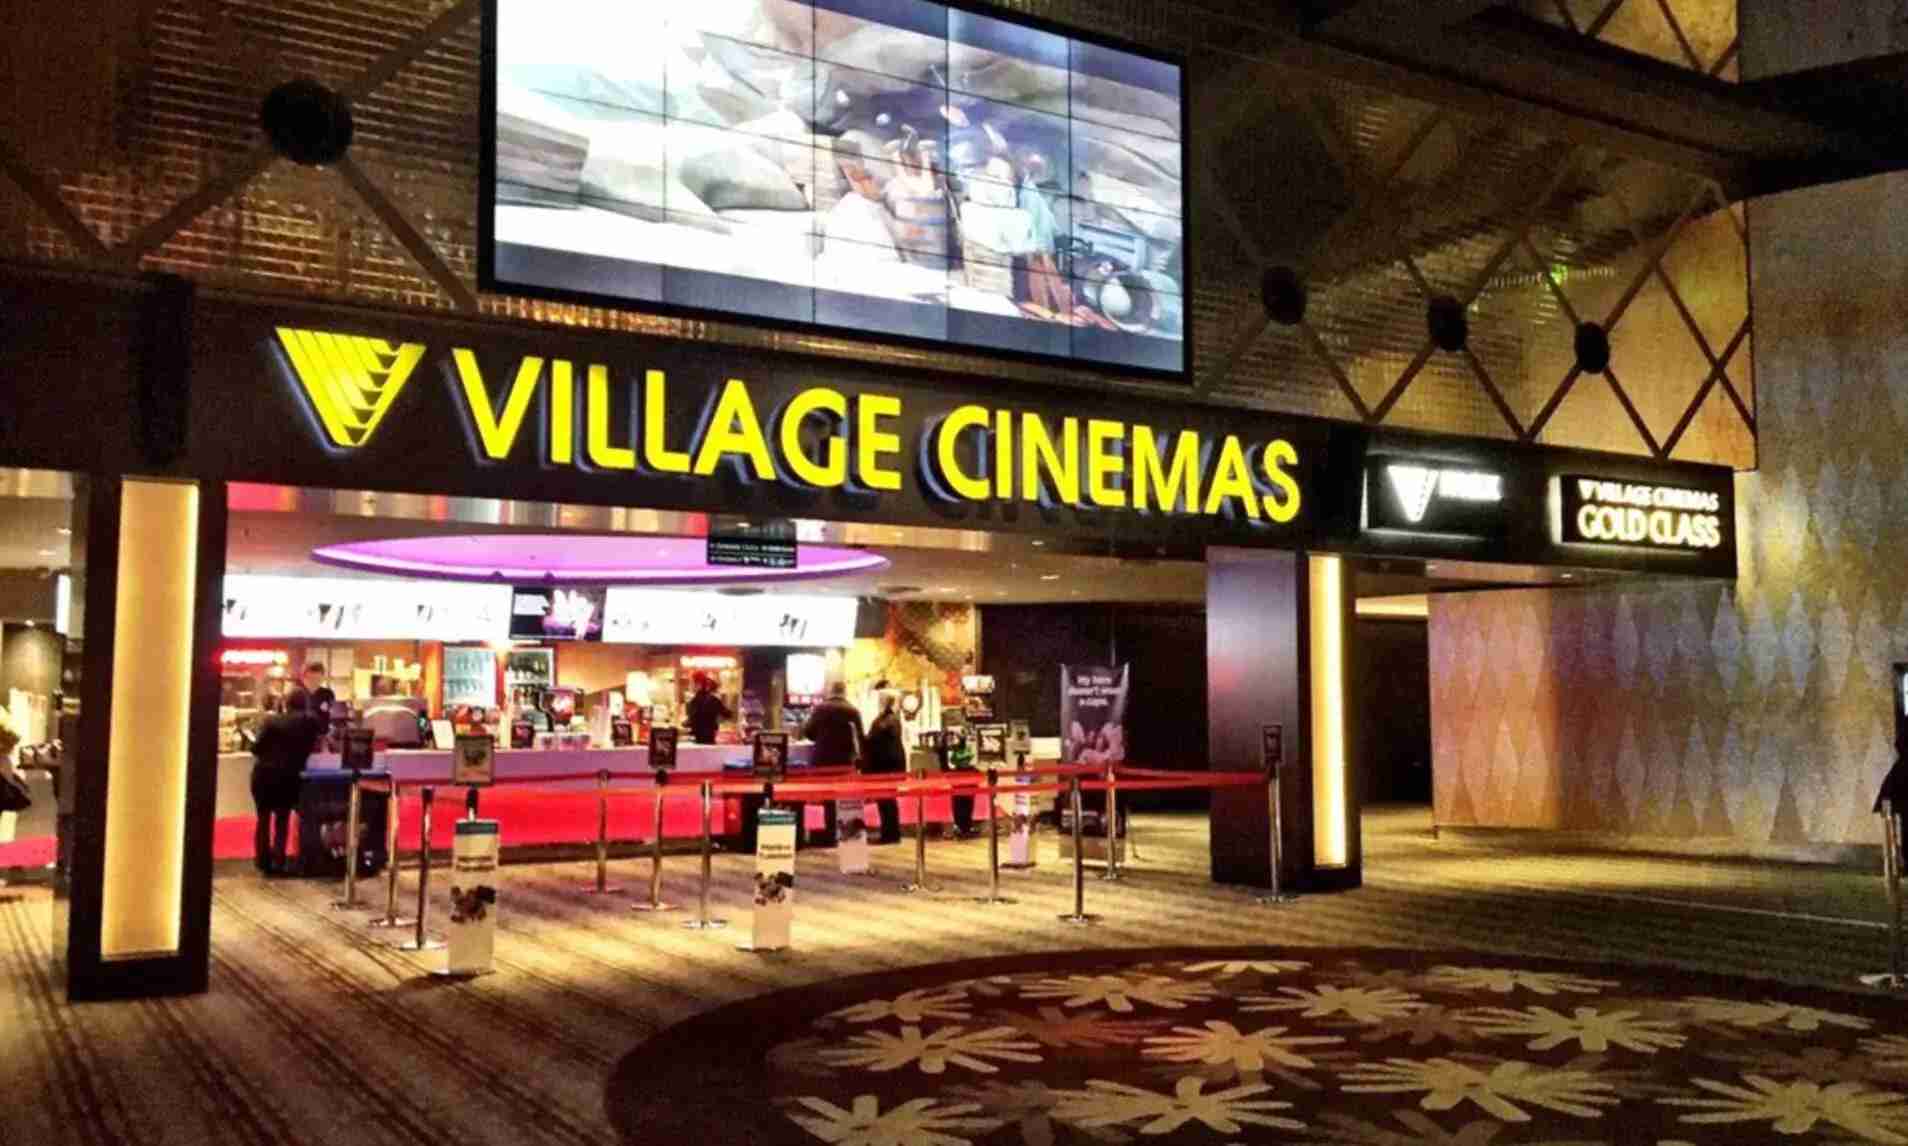 village cinema front view